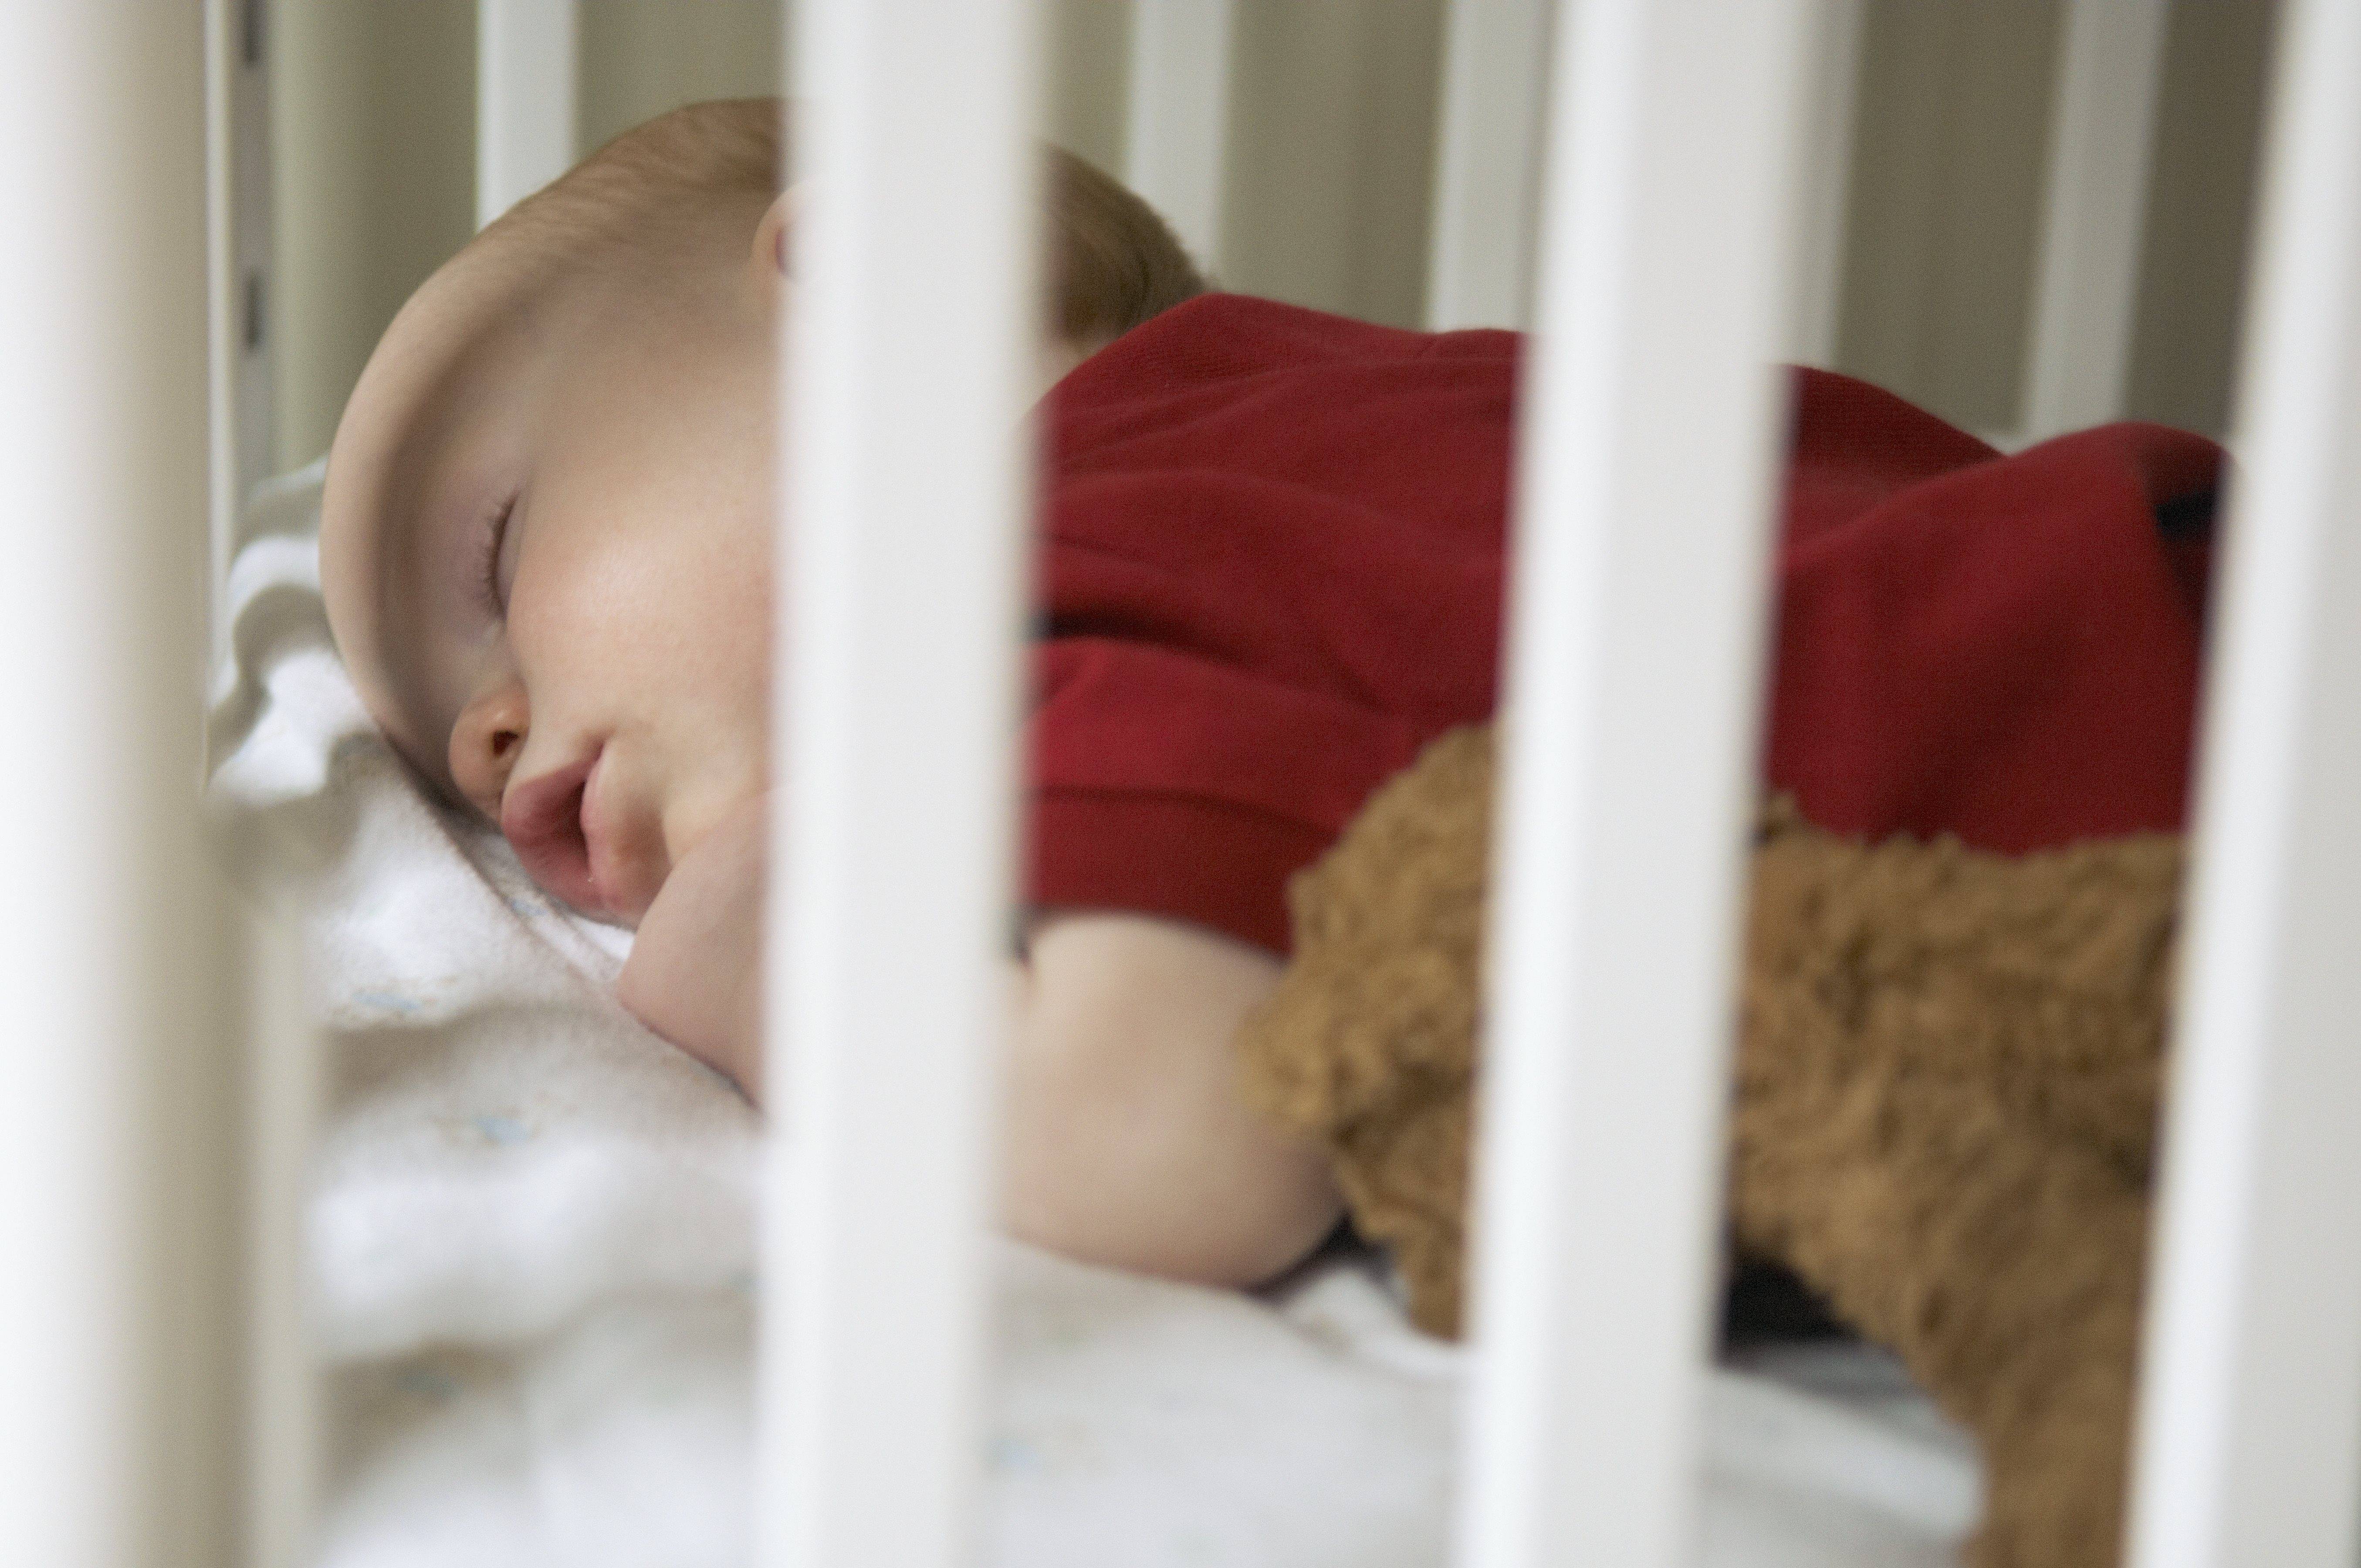 Что мешает малышу спать одному и как приучить ребенка к своей кроватке. советы детского психолога